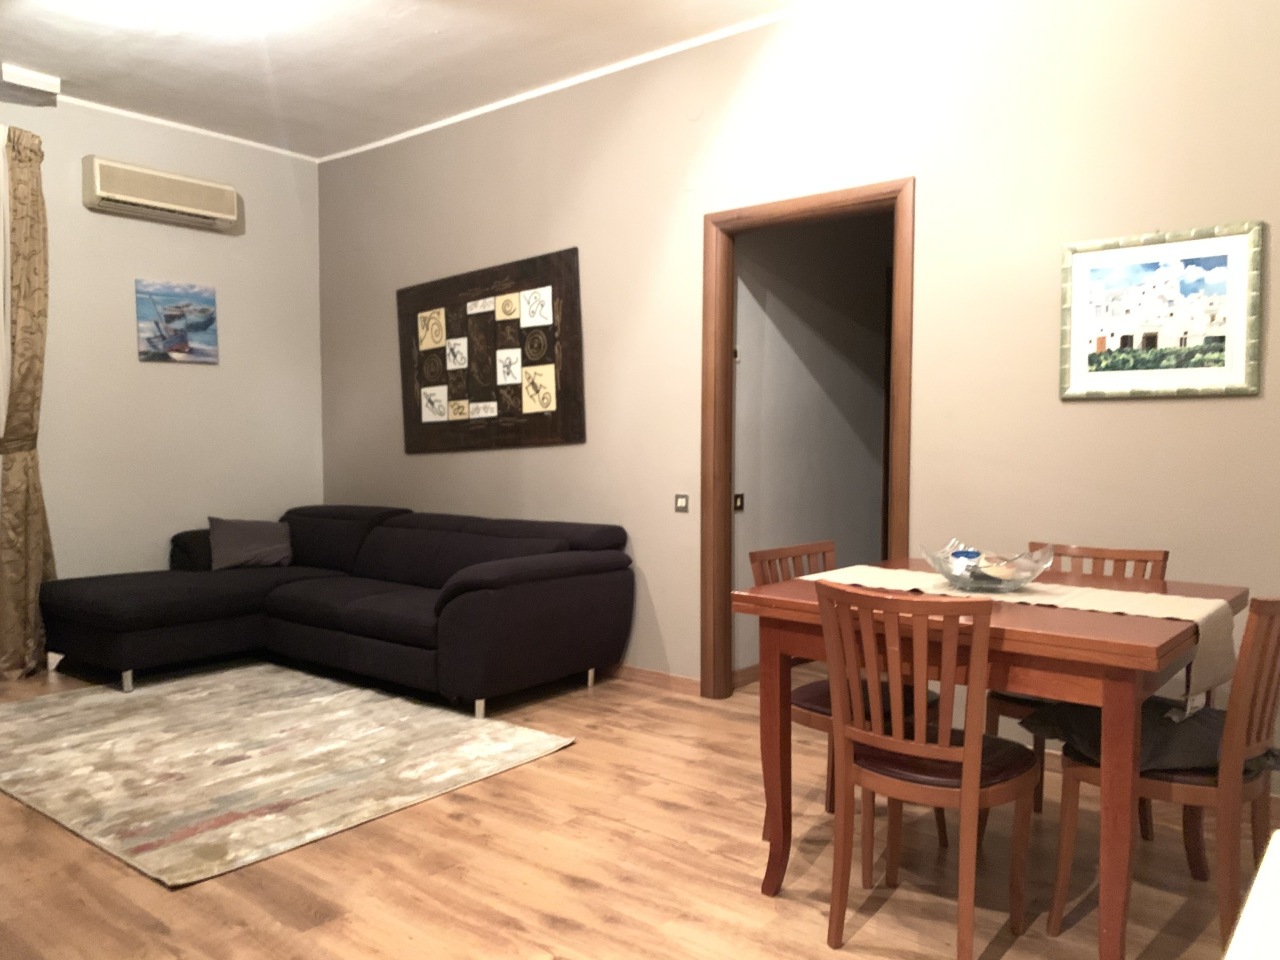 Appartamento in affitto a Francavilla al Mare, 3 locali, prezzo € 400 | PortaleAgenzieImmobiliari.it